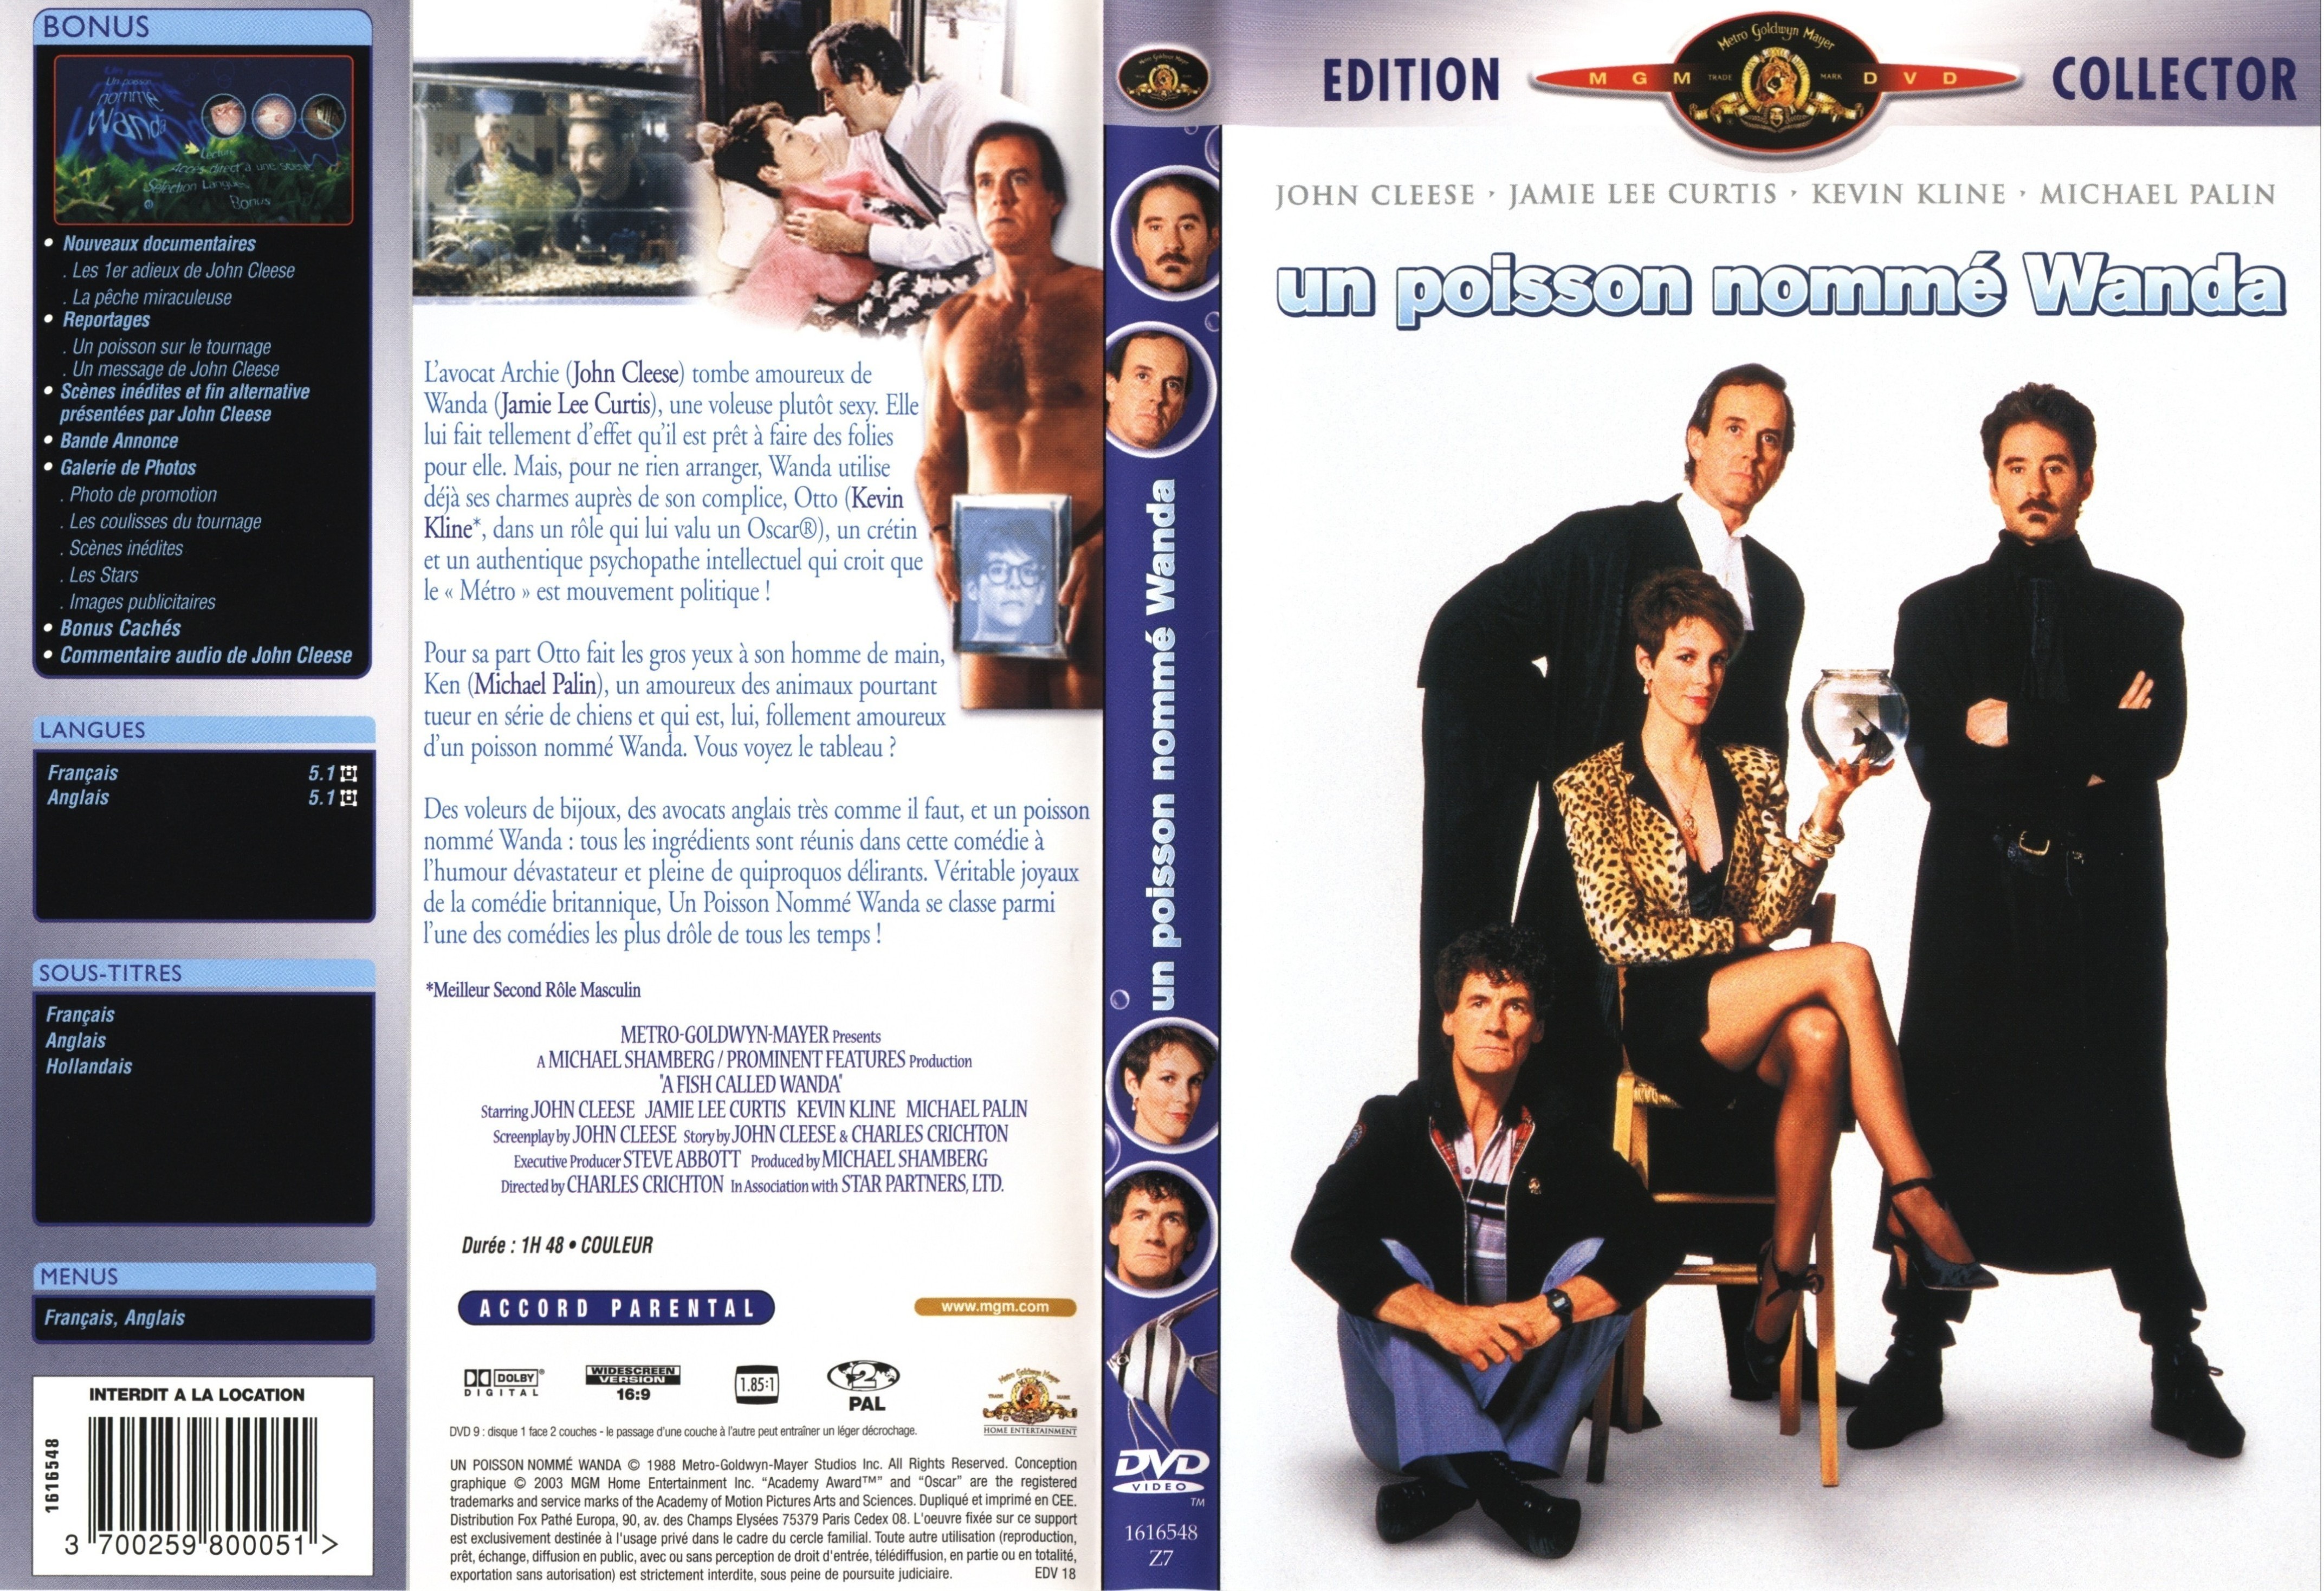 Jaquette DVD de Un poisson nommé Wanda v2 Cinéma Passion